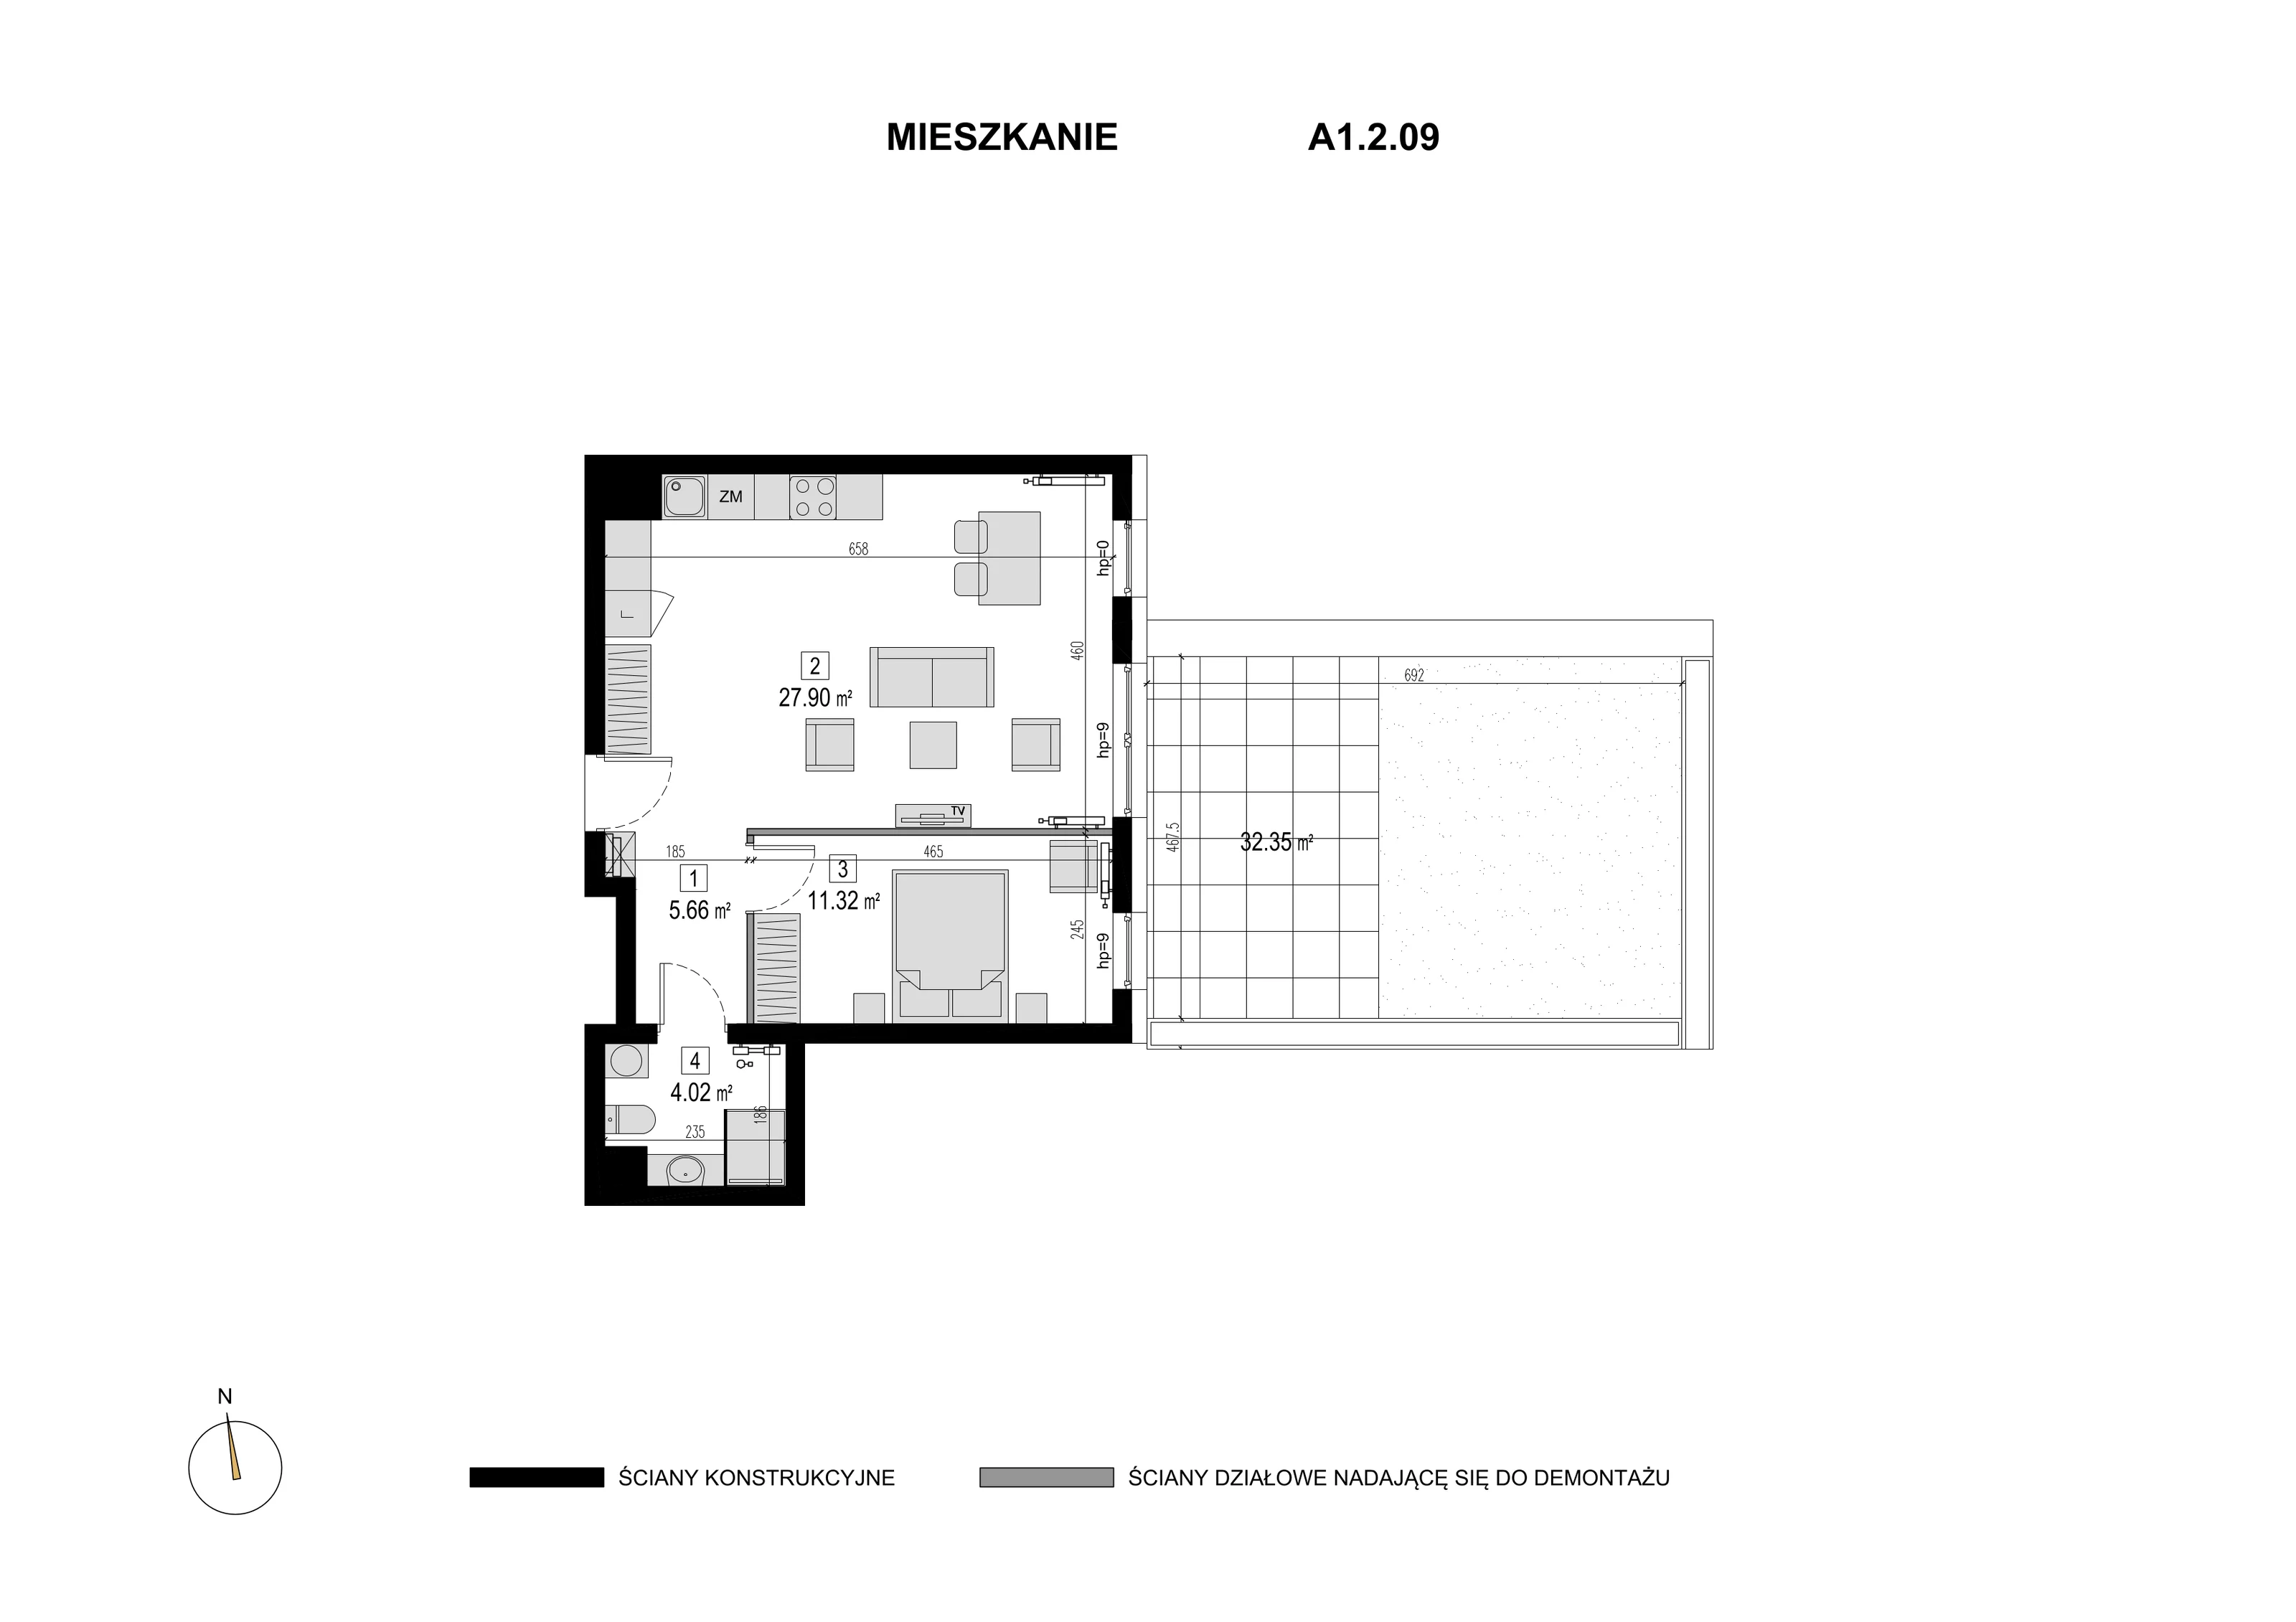 Mieszkanie 48,90 m², piętro 1, oferta nr A1.2.09, Novaforma, Legnica, ul. Chojnowska